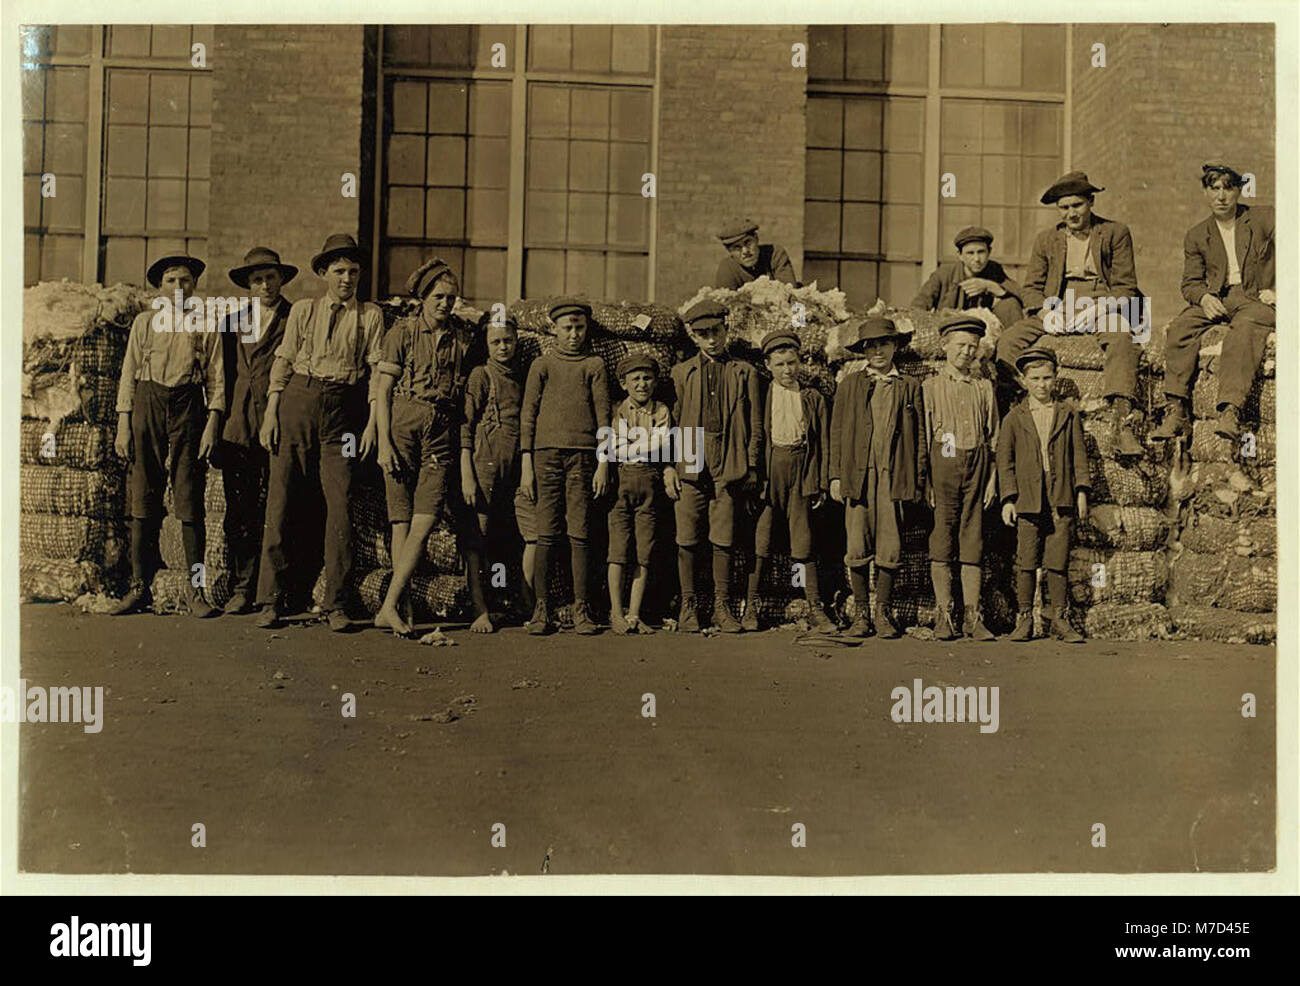 Gruppe von Jungen in Lancaster, S.C. Cotton Mills arbeiten. Kleinste junge in der Mitte sagte in der Mühle aus und hat für 5 Jahre. Jetzt spinnt. November 30, 1909 (sic). LOC 01431 nclc. Stockfoto